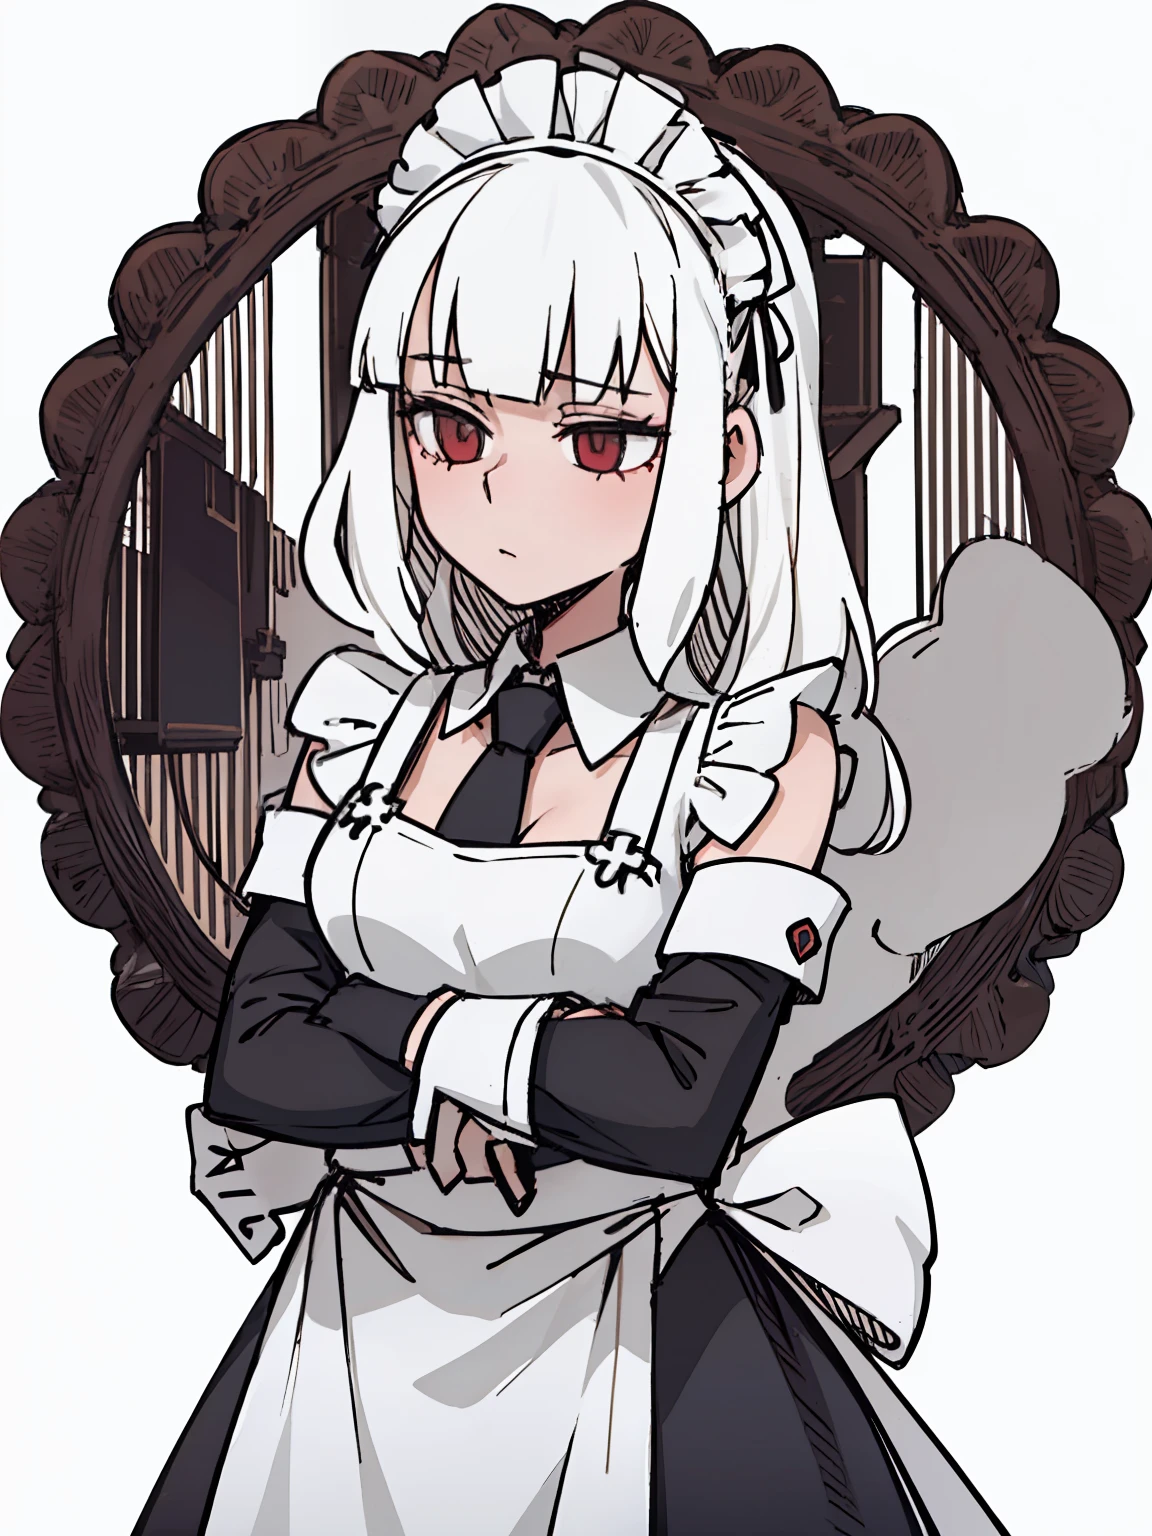 Ein Mädchen frontal,CRIT,(,(Ein halber Körper),(Langes lockiges Haar in weißer Farbe),(das Dienstmädchen-Outfit)),jung, weißer Hintergrund